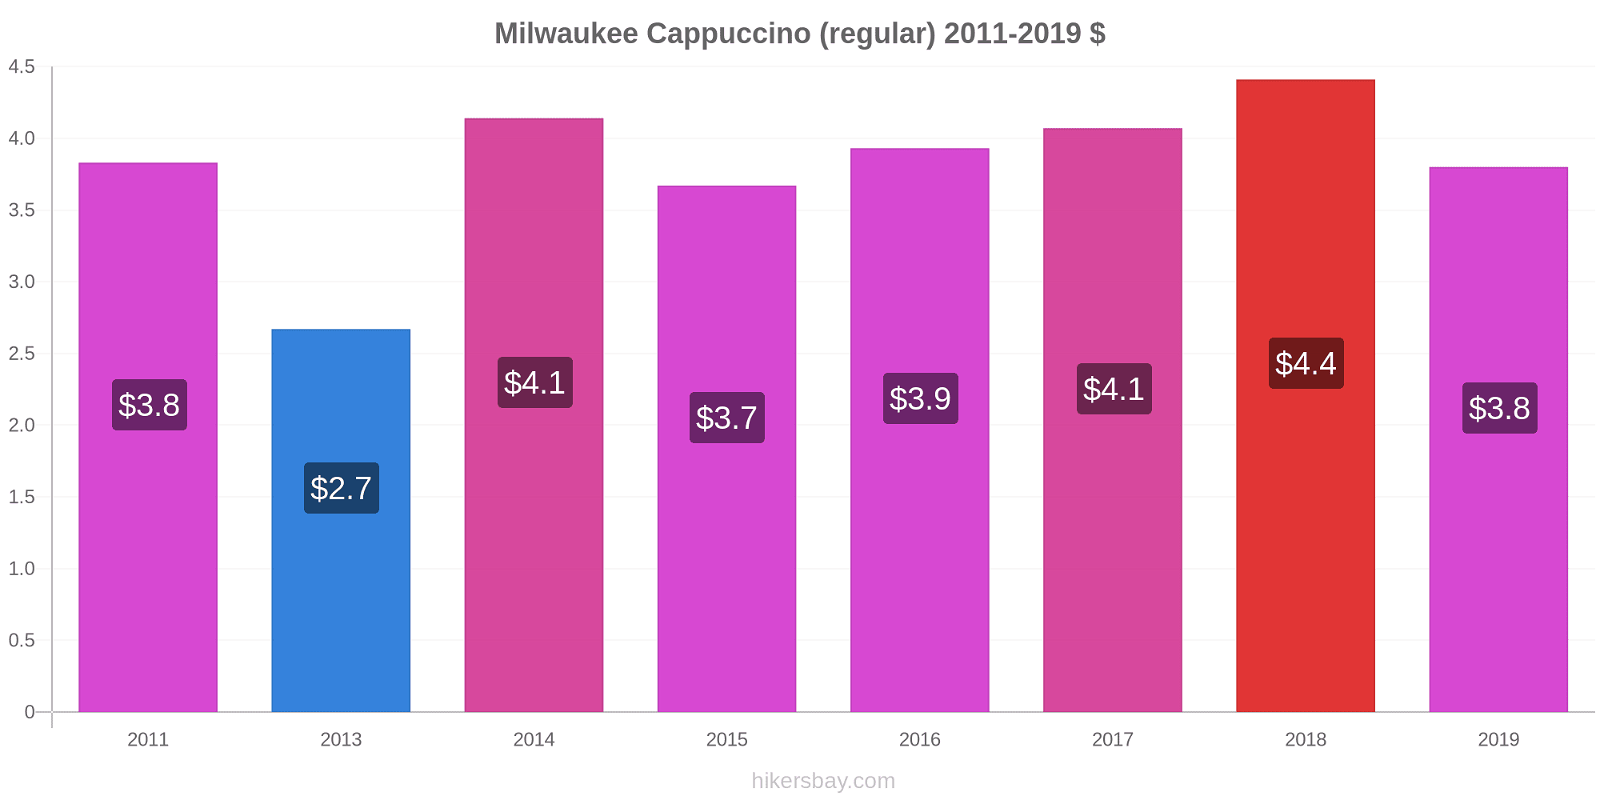 Milwaukee price changes Cappuccino (regular) hikersbay.com